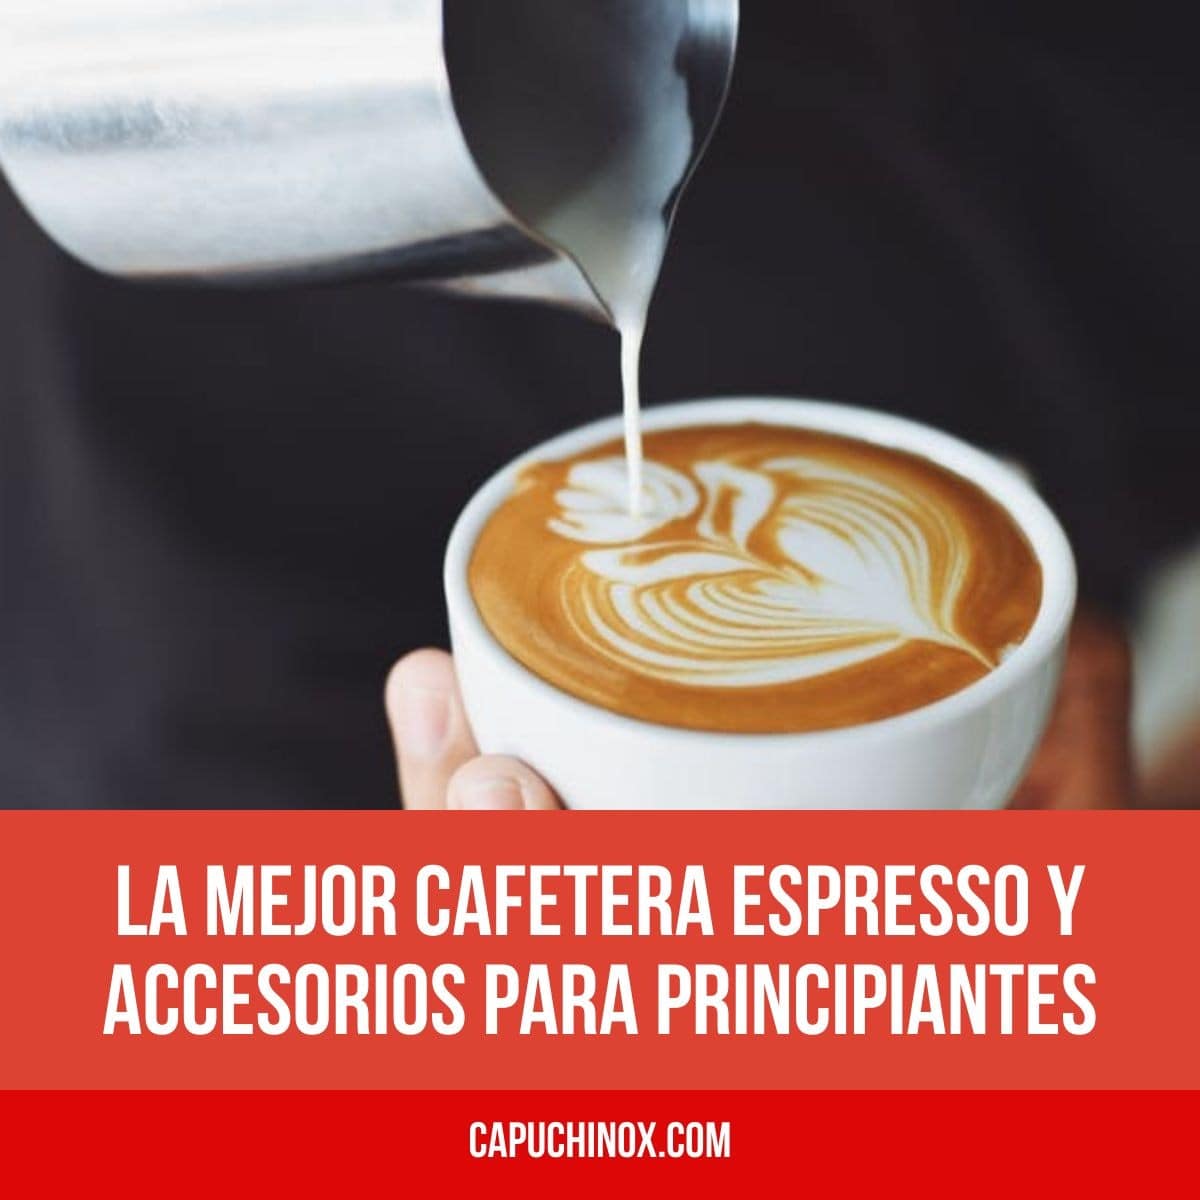 La mejor cafetera espresso y accesorios para principiantes (tazas de café, prensadores, jarras de leche, molinillo)